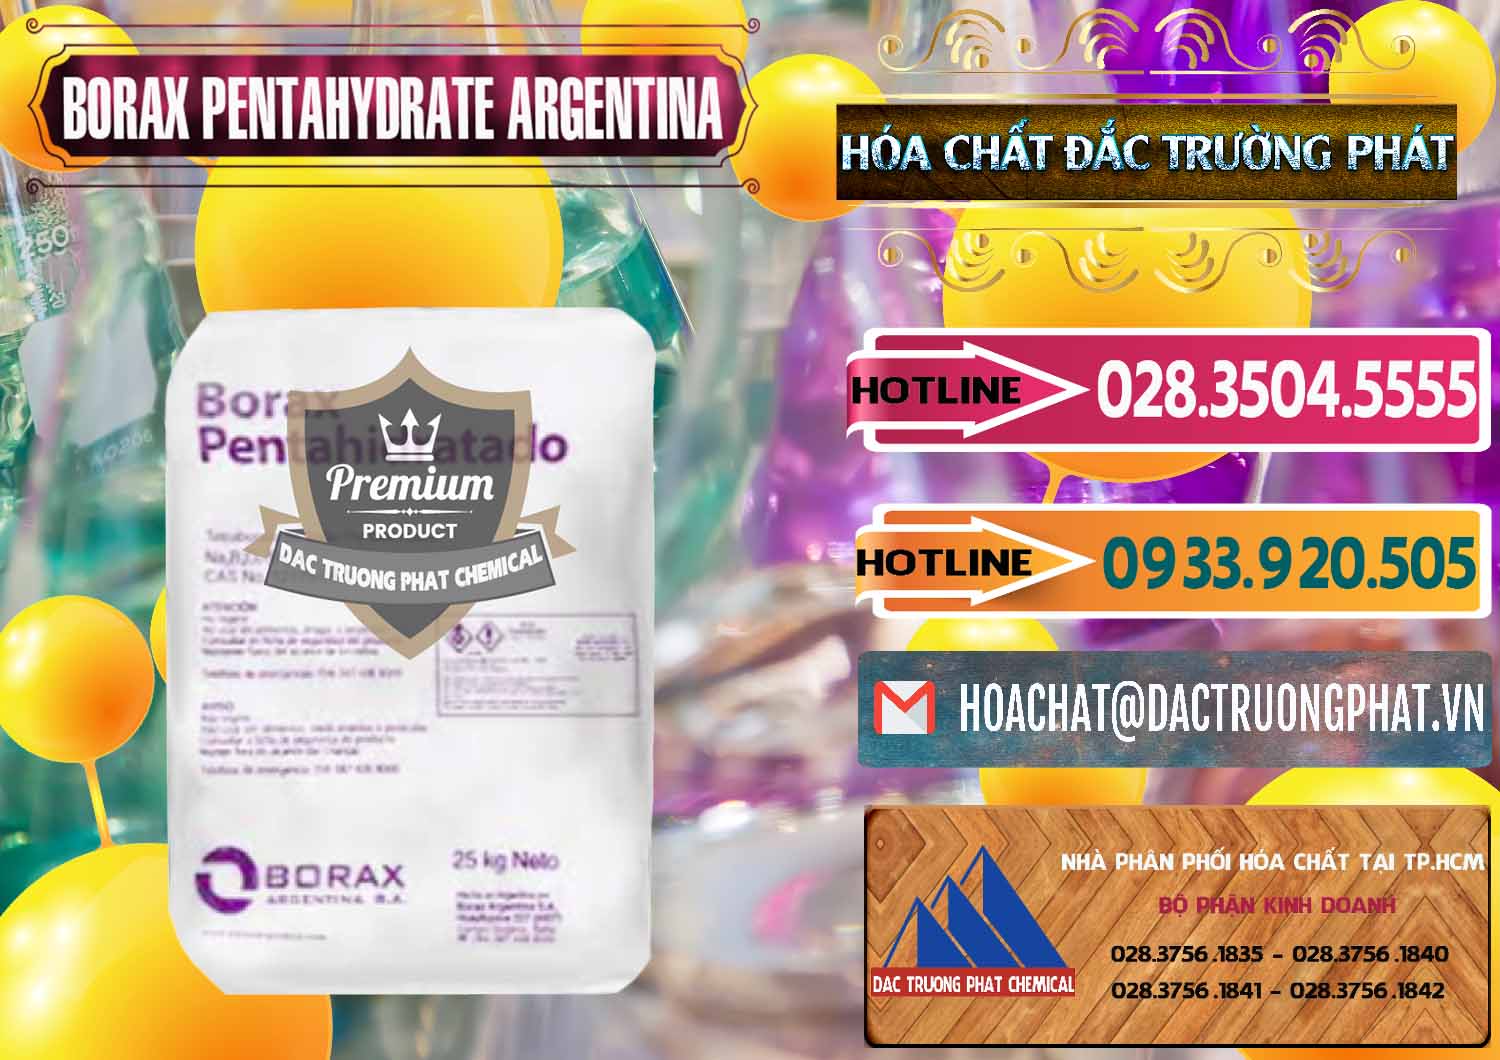 Nơi nhập khẩu - bán Borax Pentahydrate Argentina - 0447 - Chuyên nhập khẩu & cung cấp hóa chất tại TP.HCM - dactruongphat.vn